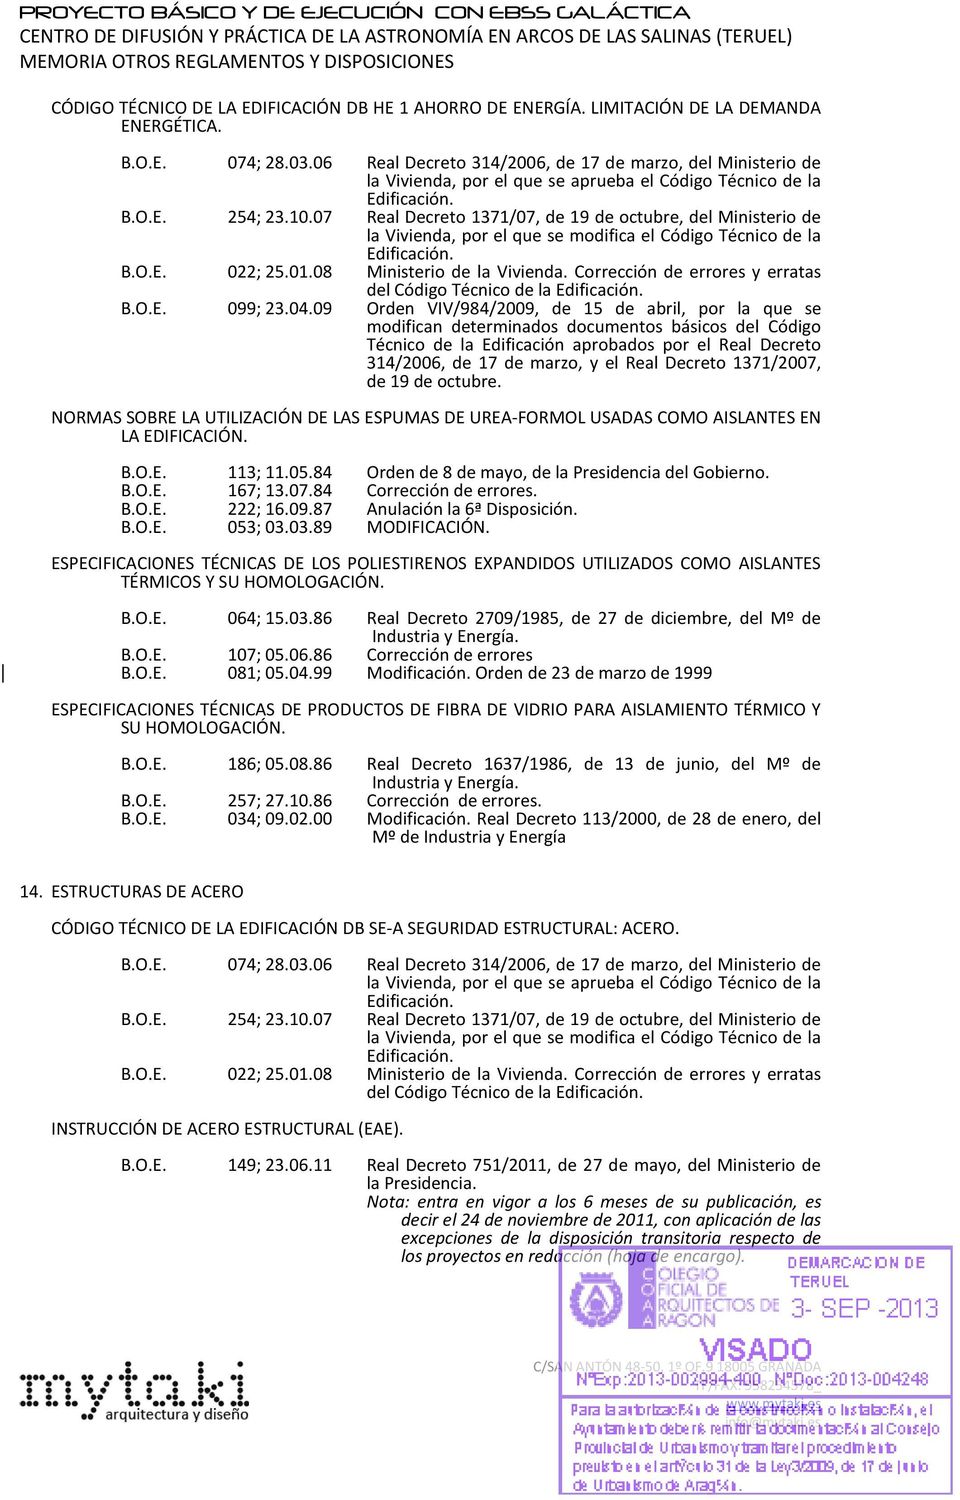 07 Real Decreto 1371/07, de 19 de octubre, del Ministerio de la Vivienda, por el que se modifica el Código Técnico de la 022; 25.01.08 Ministerio de la Vivienda.